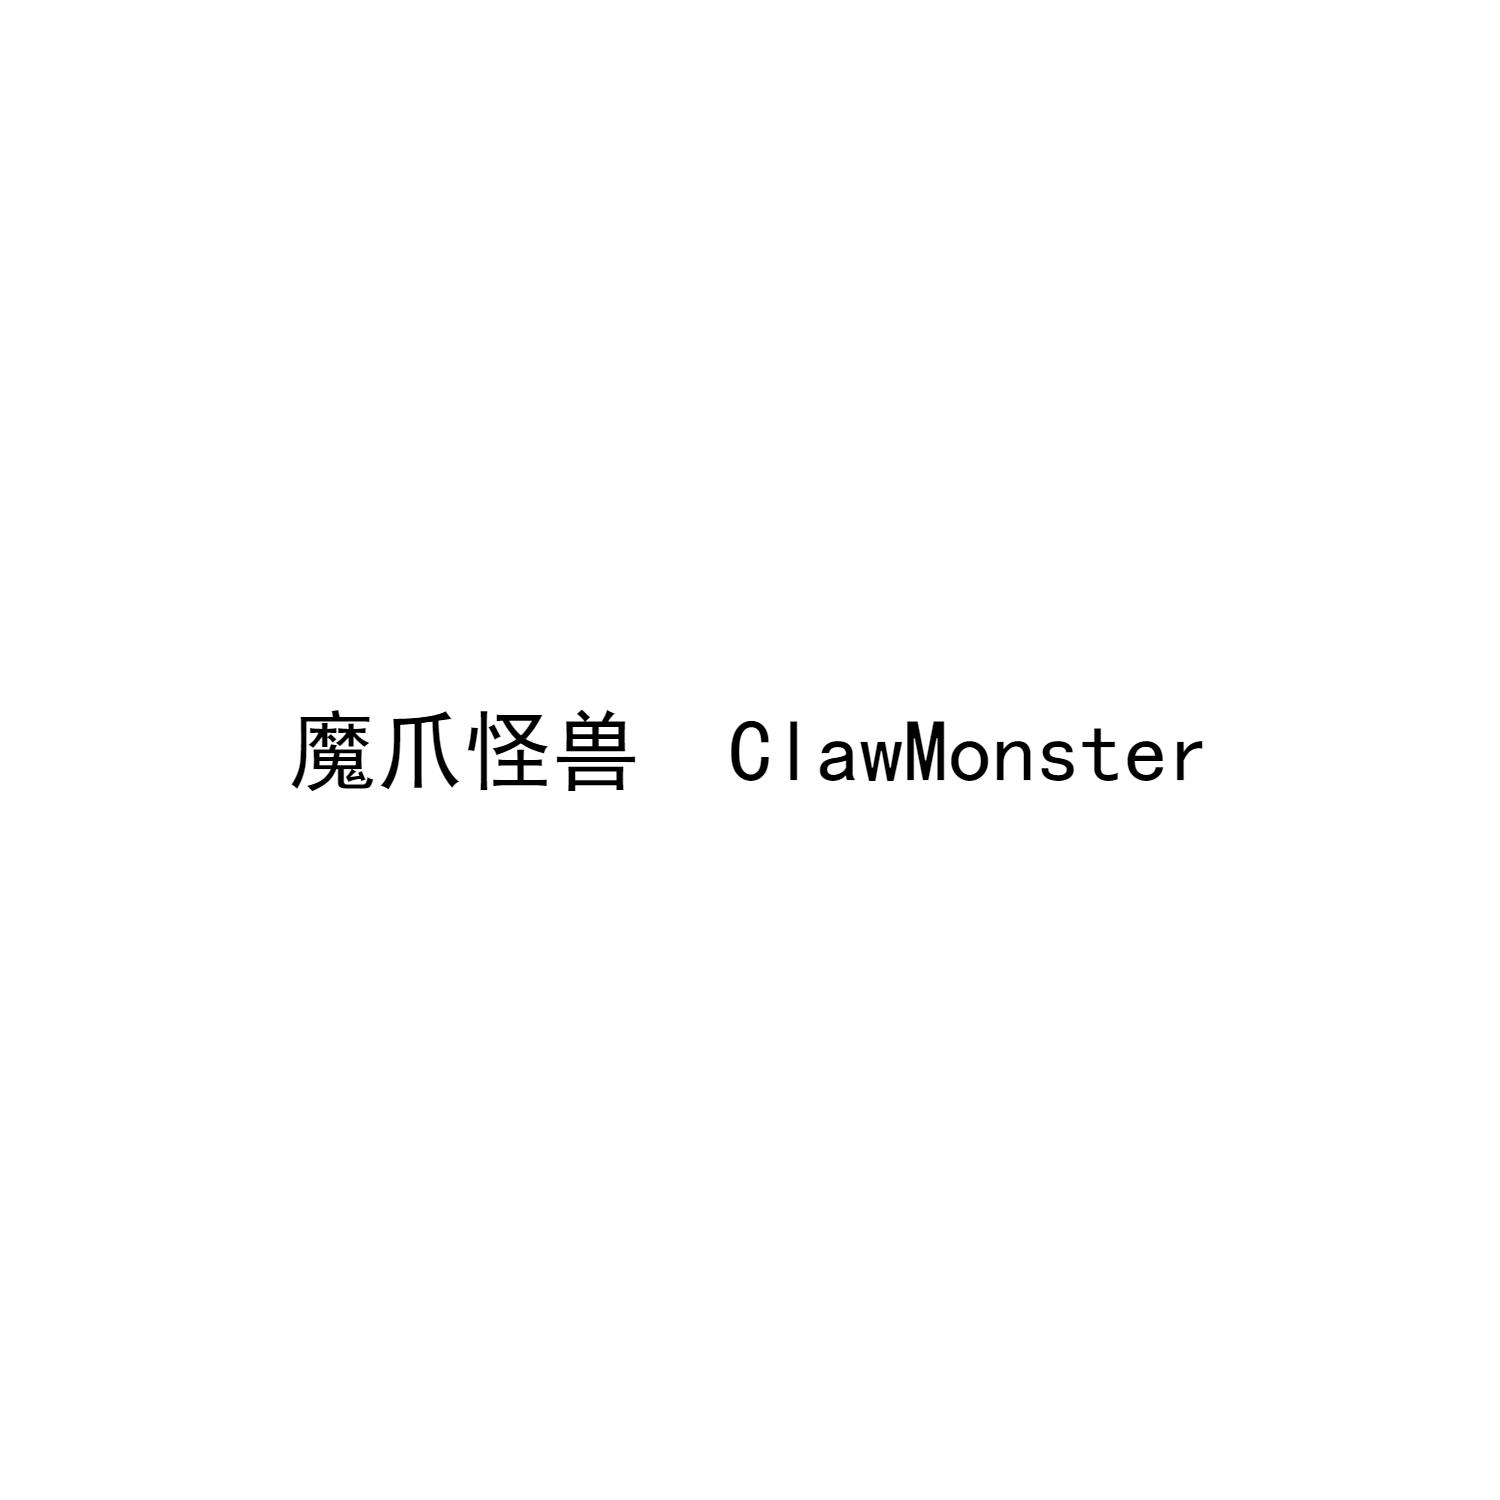 魔爪怪兽 clawmonster商标公告